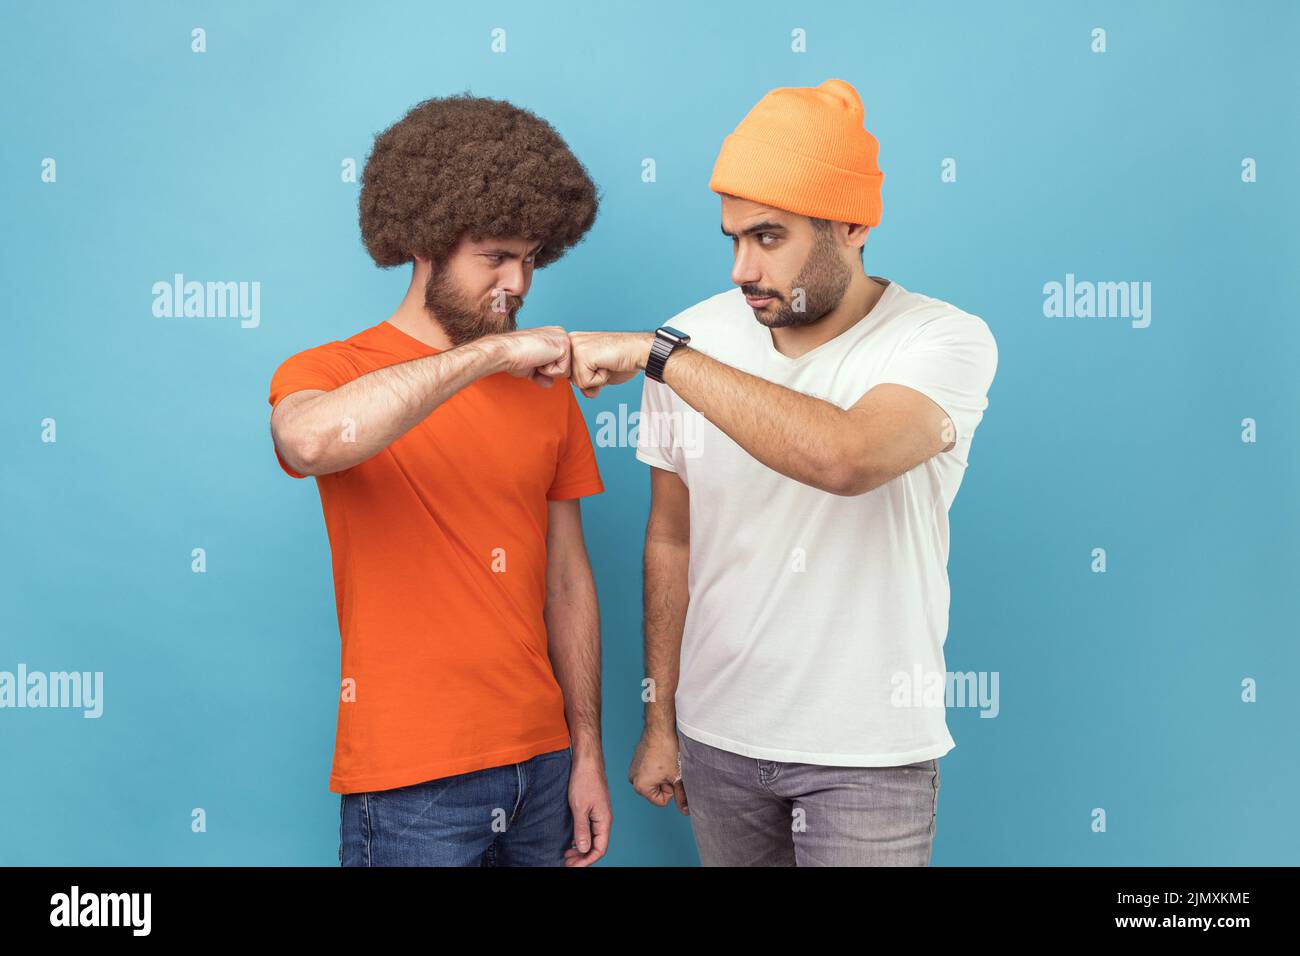 Portrait von zwei ernsthaften jungen erwachsenen Hipster-Männern, die sich mit aggressiver Optik und mit Beule-Geste im Kampf angucken und stehen. Innenaufnahme des Studios isoliert auf blauem Hintergrund. Stockfoto